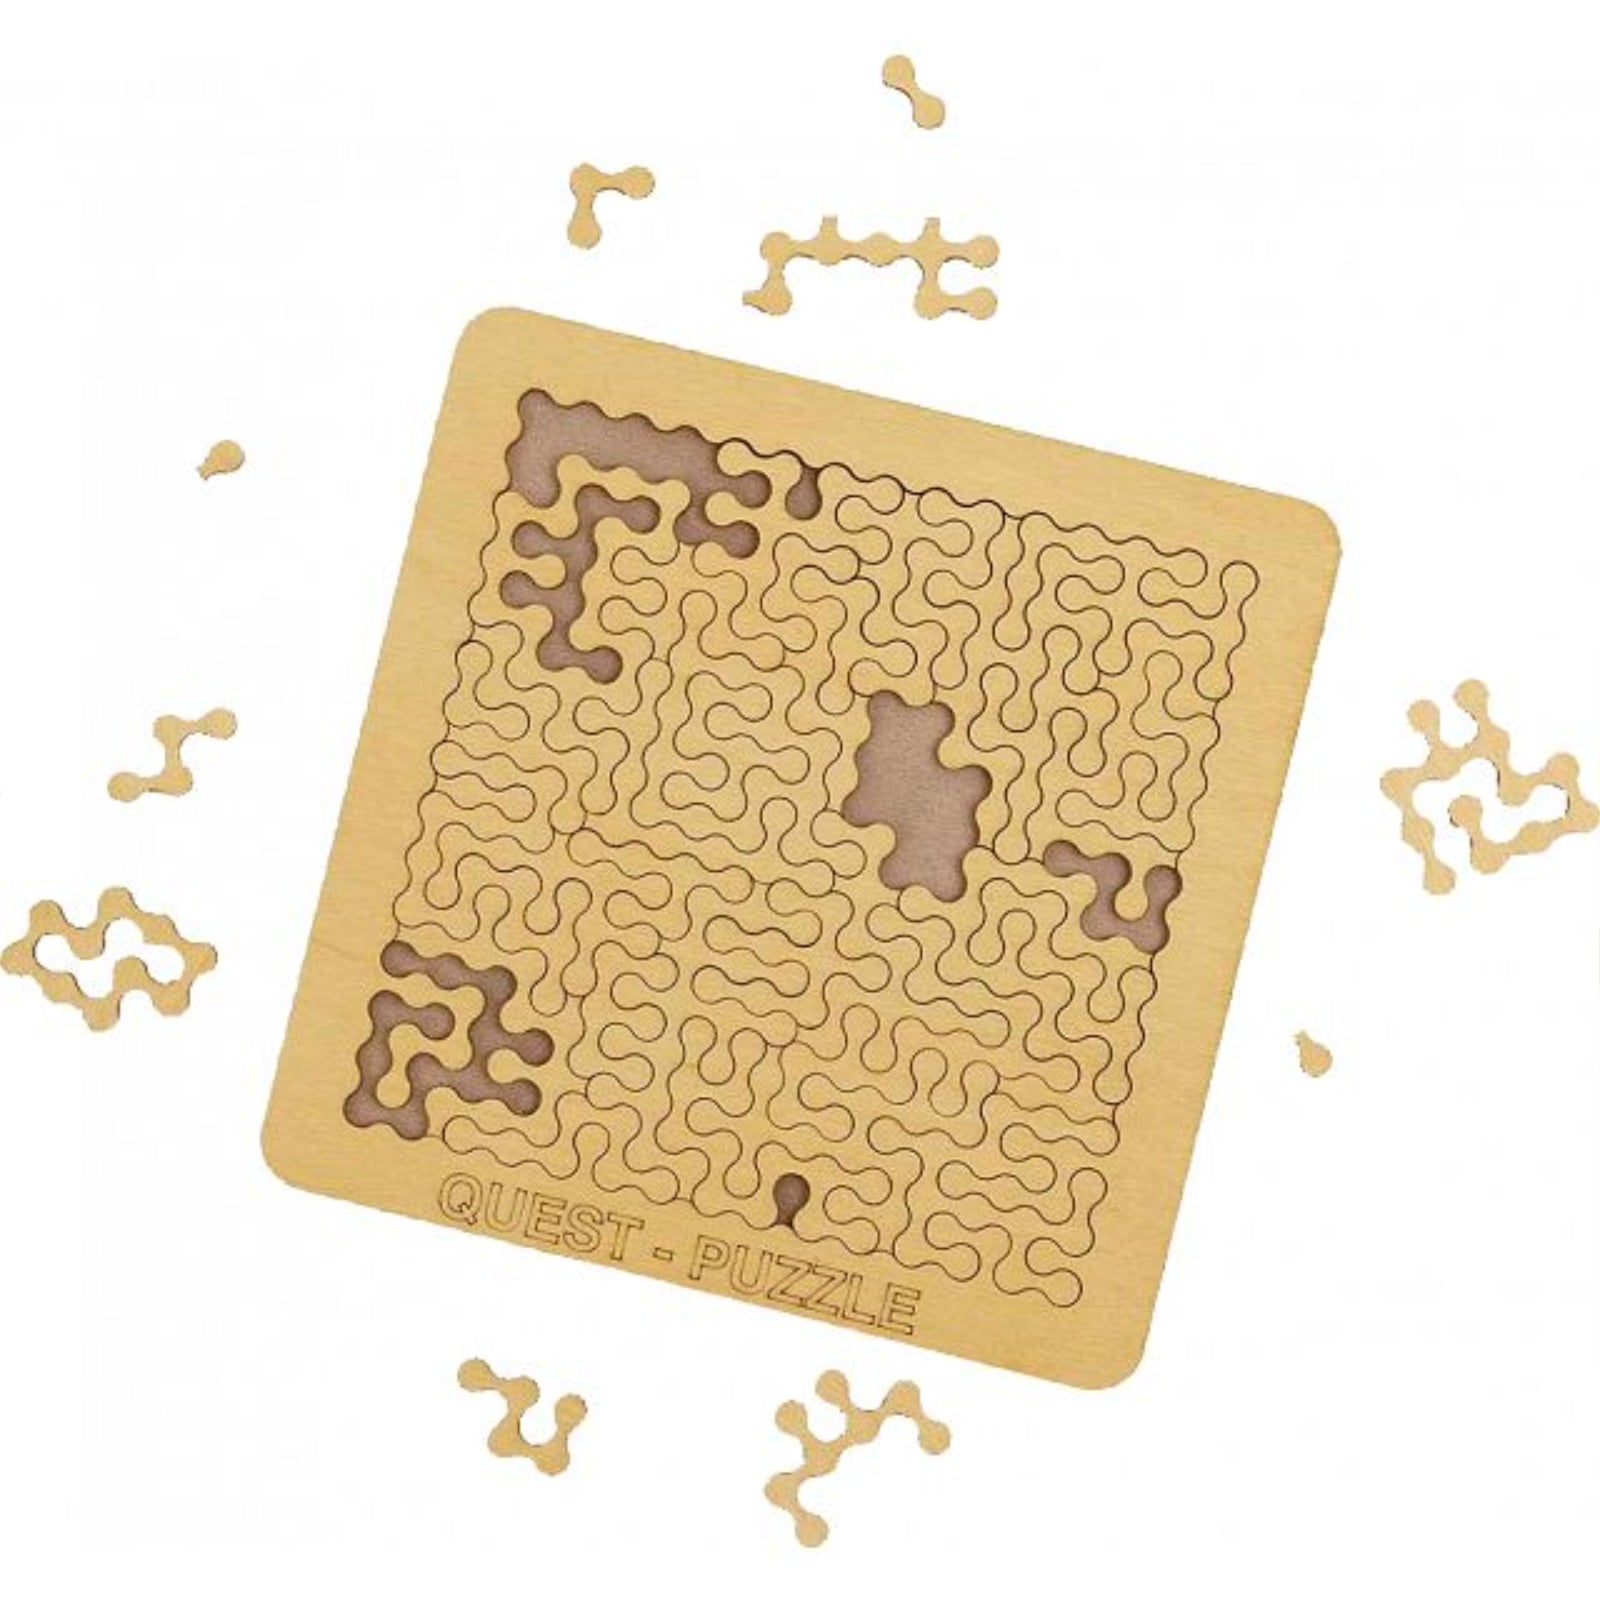 Wooden Puzzle Trio - Labyrinth, Quest, Cube Jigsaw Puzzle - ESC Welt